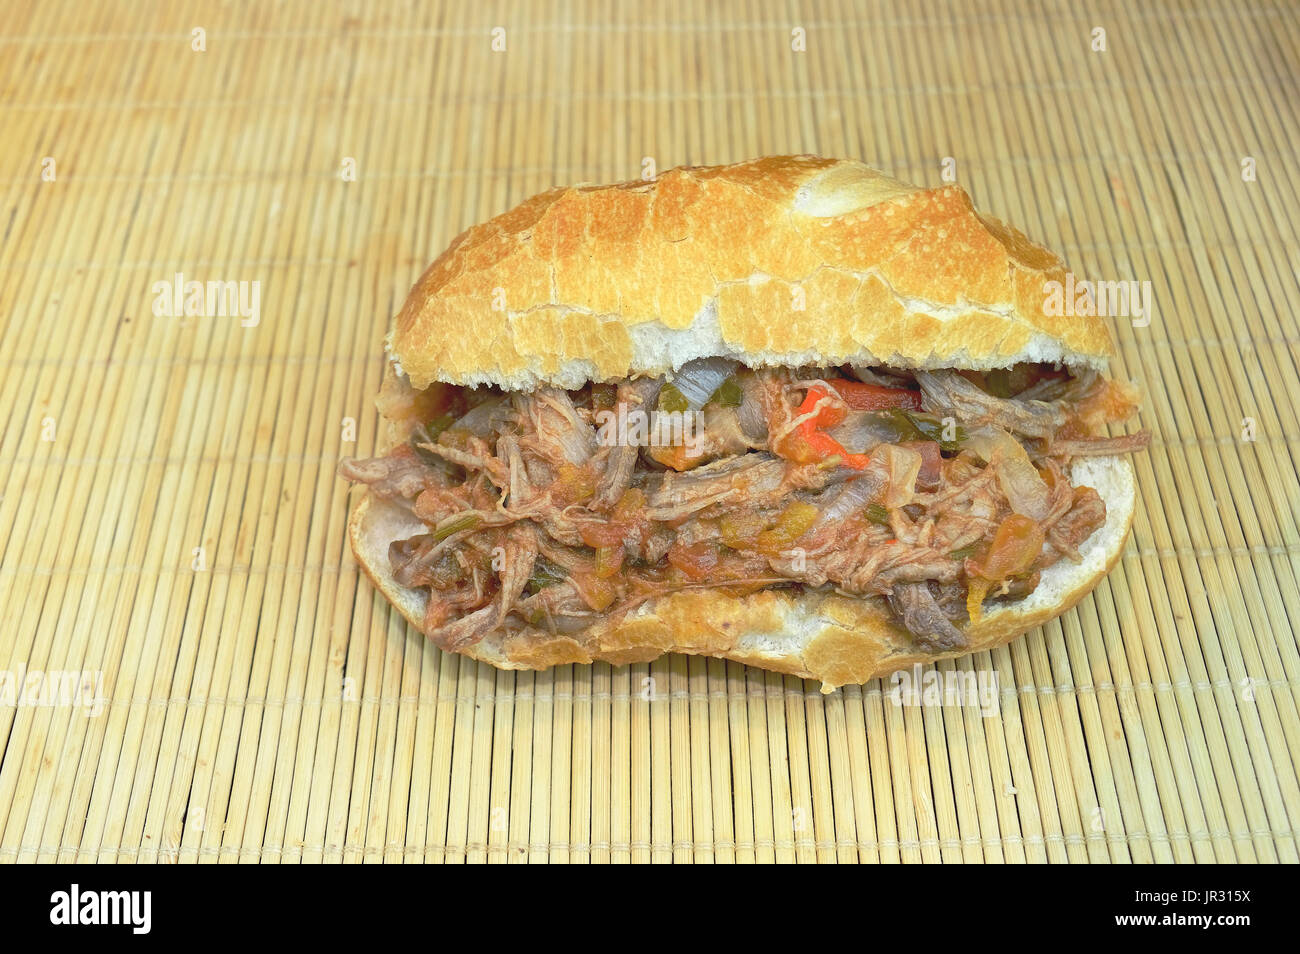 Vue de dessus du sandwich à la viande sur une surface en bois Banque D'Images